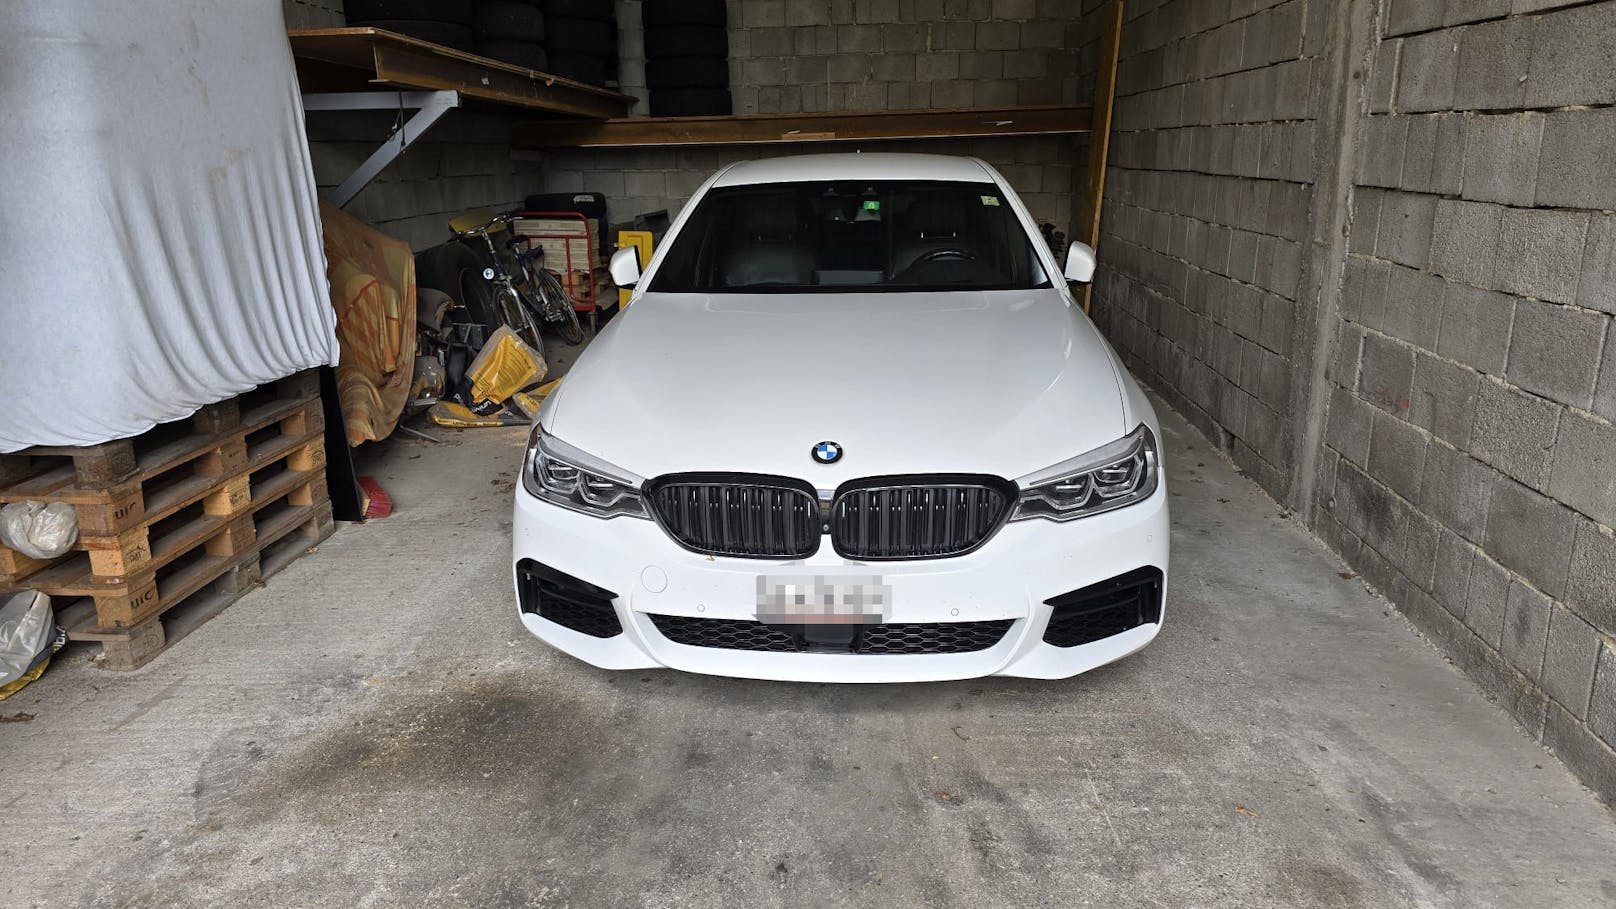 Dieser BMW 530i mit rund 250 PS wurde beschlagnahmt und steht nun bei einem Abschleppdienst in Ansfelden.